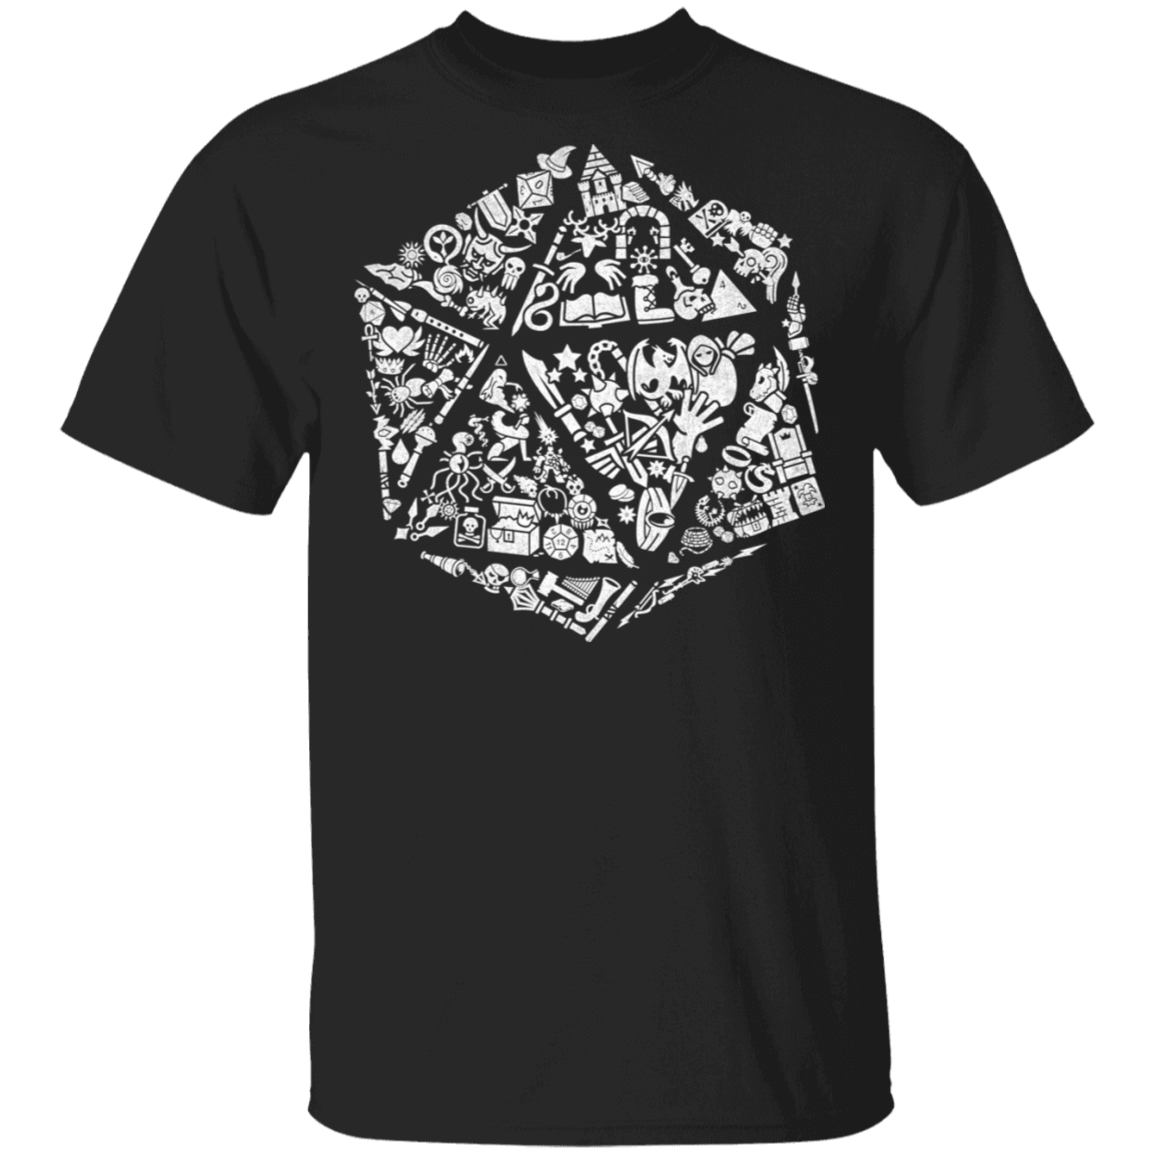 T-Shirts Black / S Roll Player T-Shirt